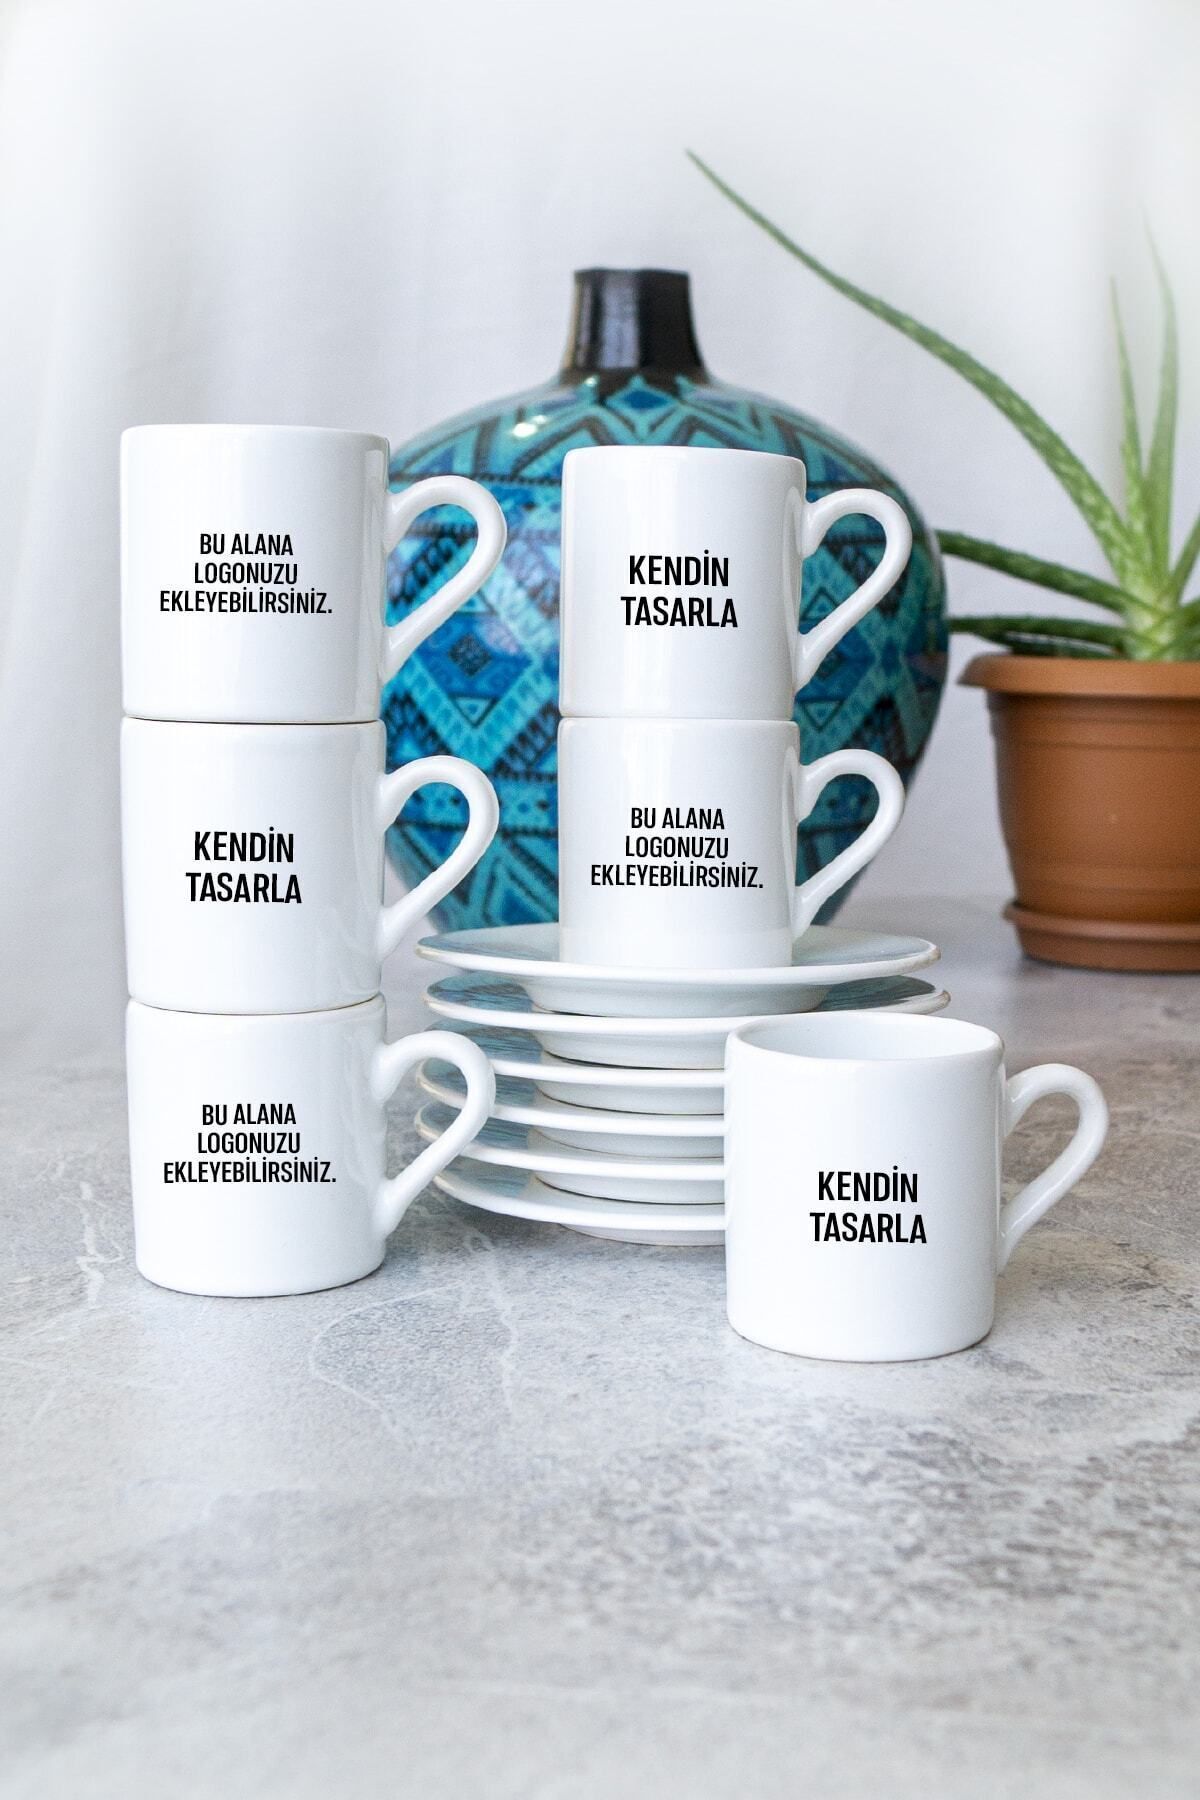 Vela Gifting Seramik Kahve Fincanı Resimli Baskı Tasarım Kendin Tasarla Kişiye Özel Firma Logolu.